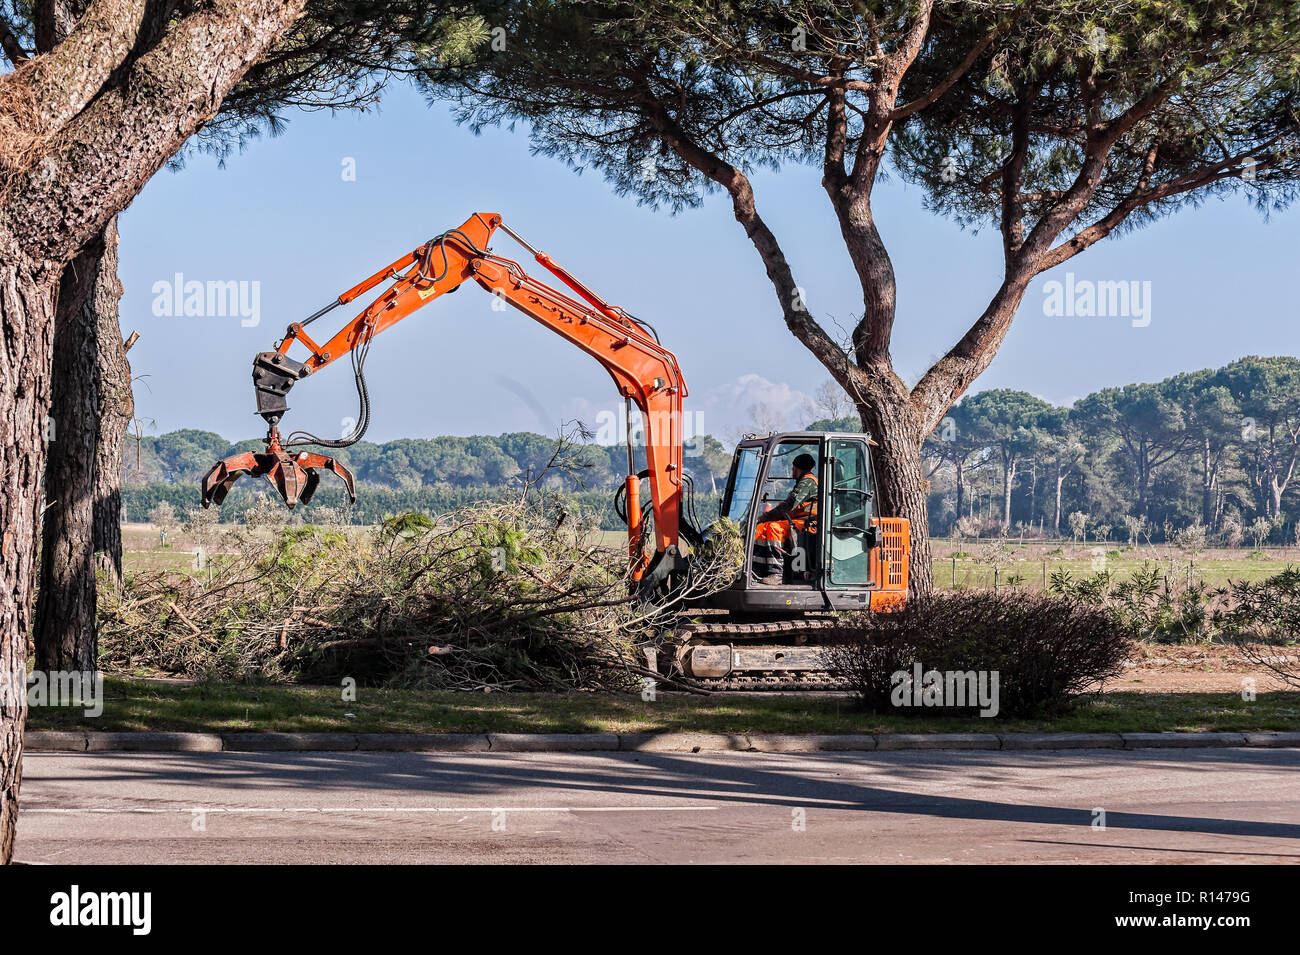 Bibione, Italia - 08 de marzo de 2018 : Los trabajadores y las máquinas de poda de árboles antes del inicio de la temporada turística. Foto de stock